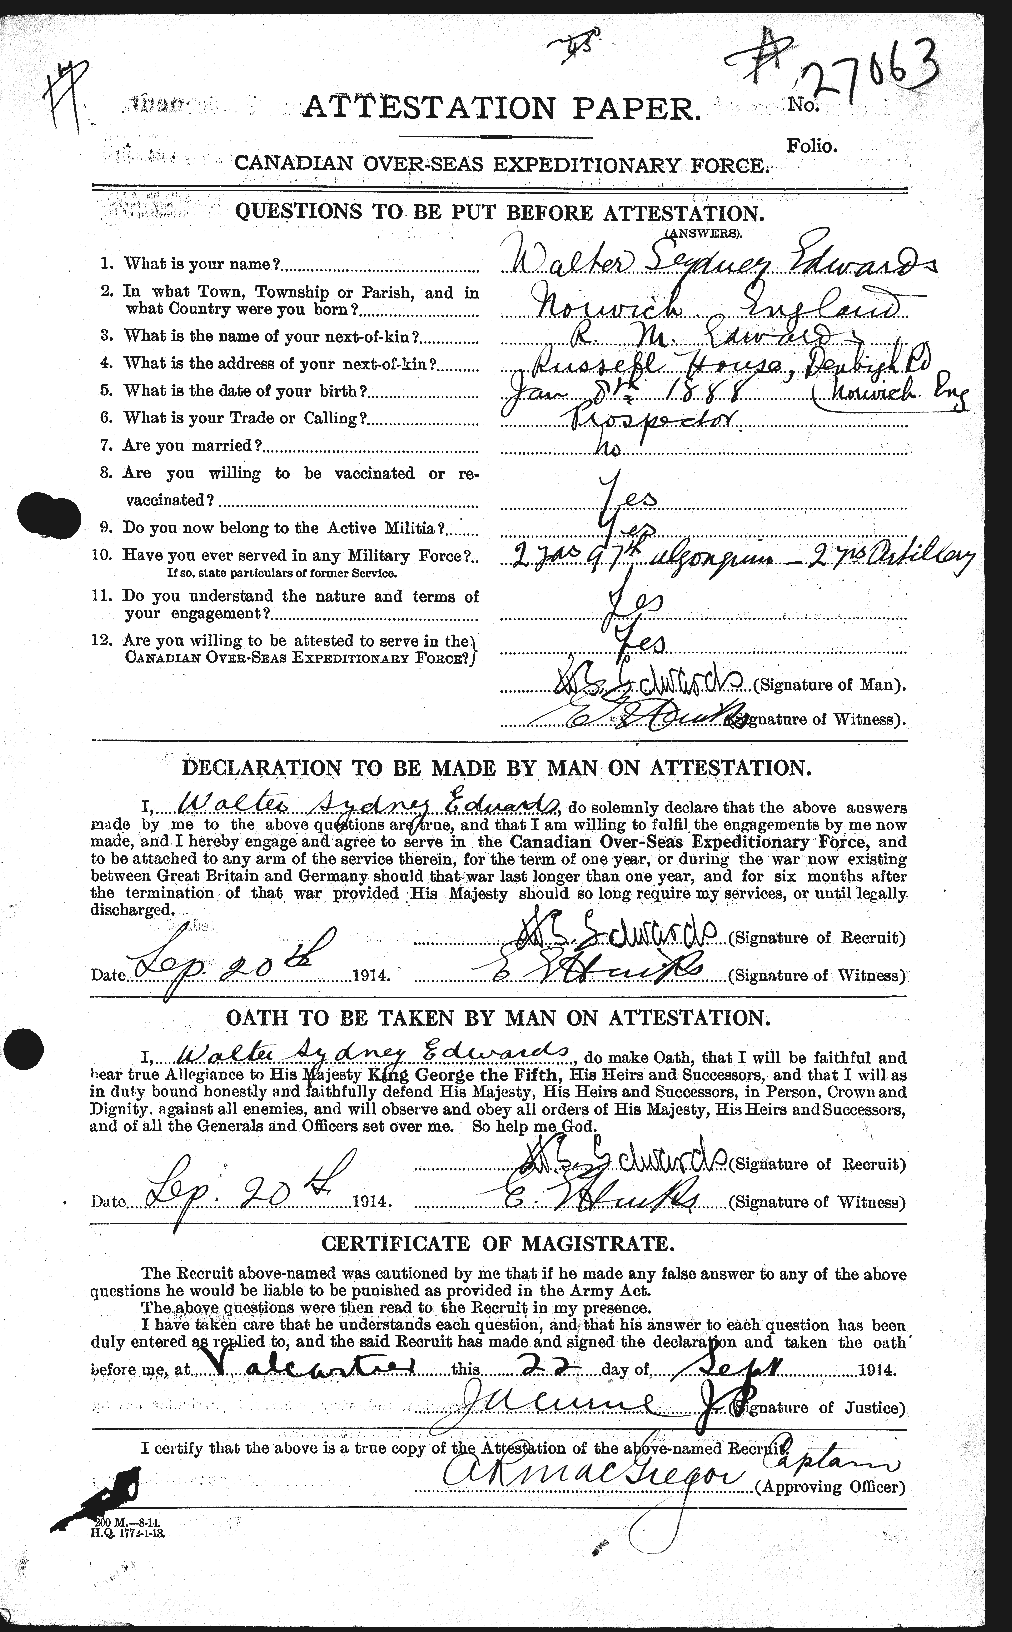 Dossiers du Personnel de la Première Guerre mondiale - CEC 310378a